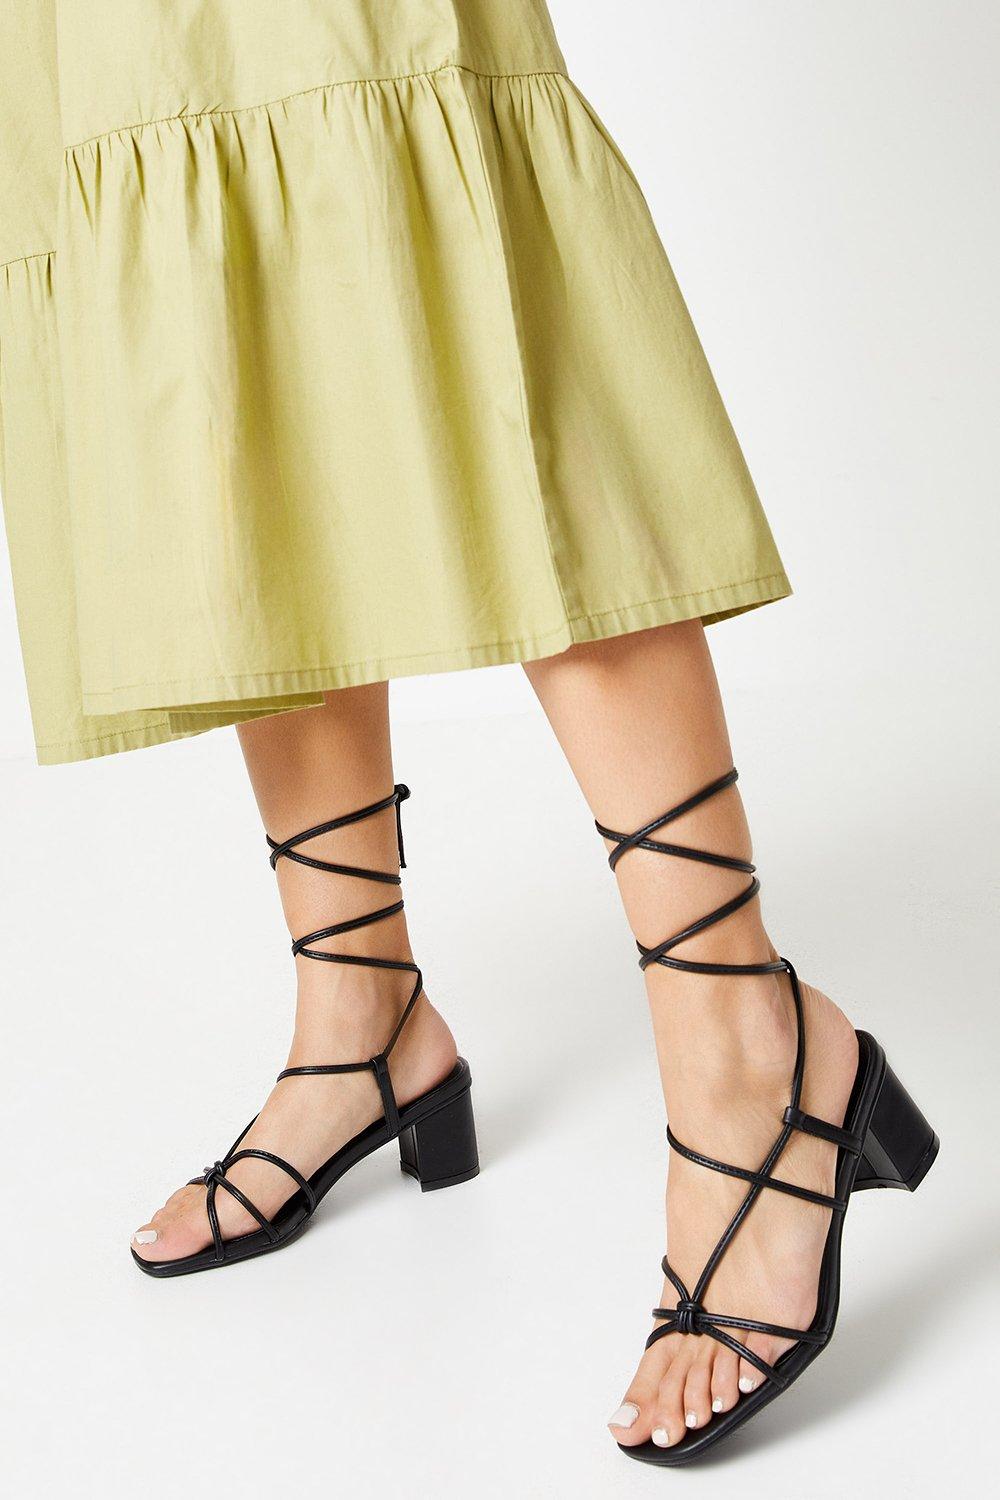 Womens Faith: Connie Spaghetti Strap Medium Block Heel Sandals